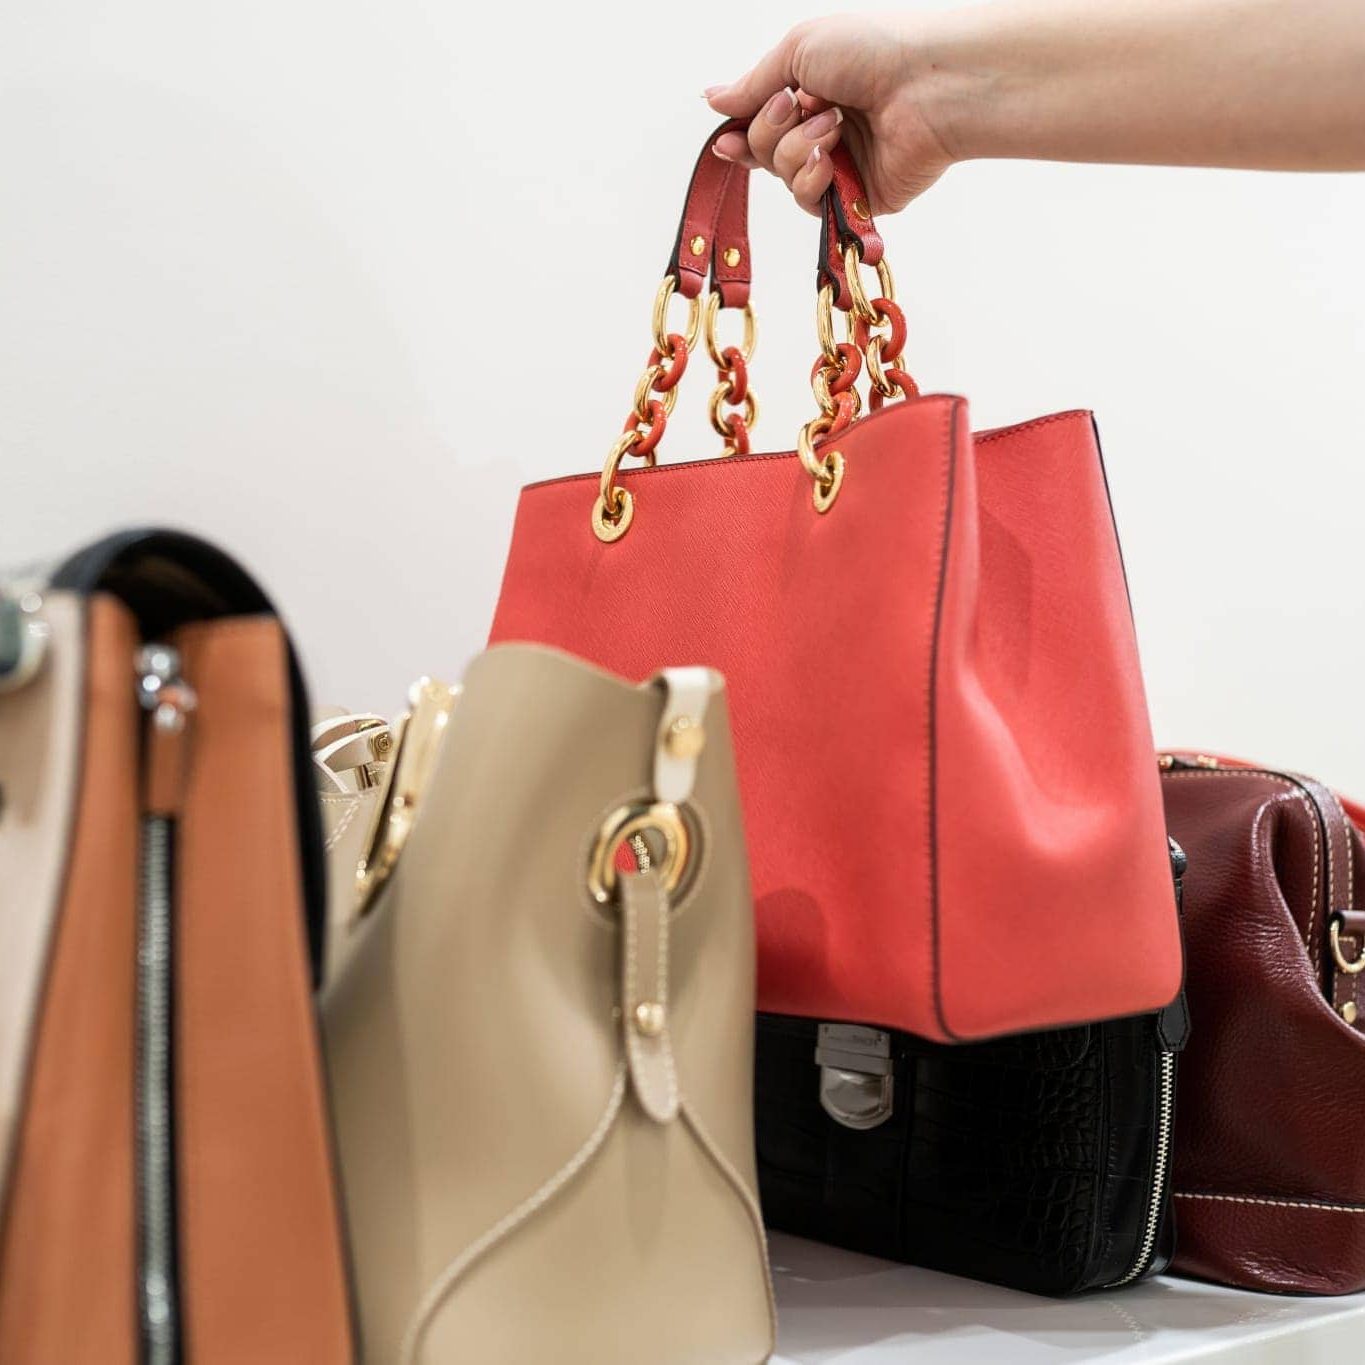 Handbag Types by Elsanna Portea